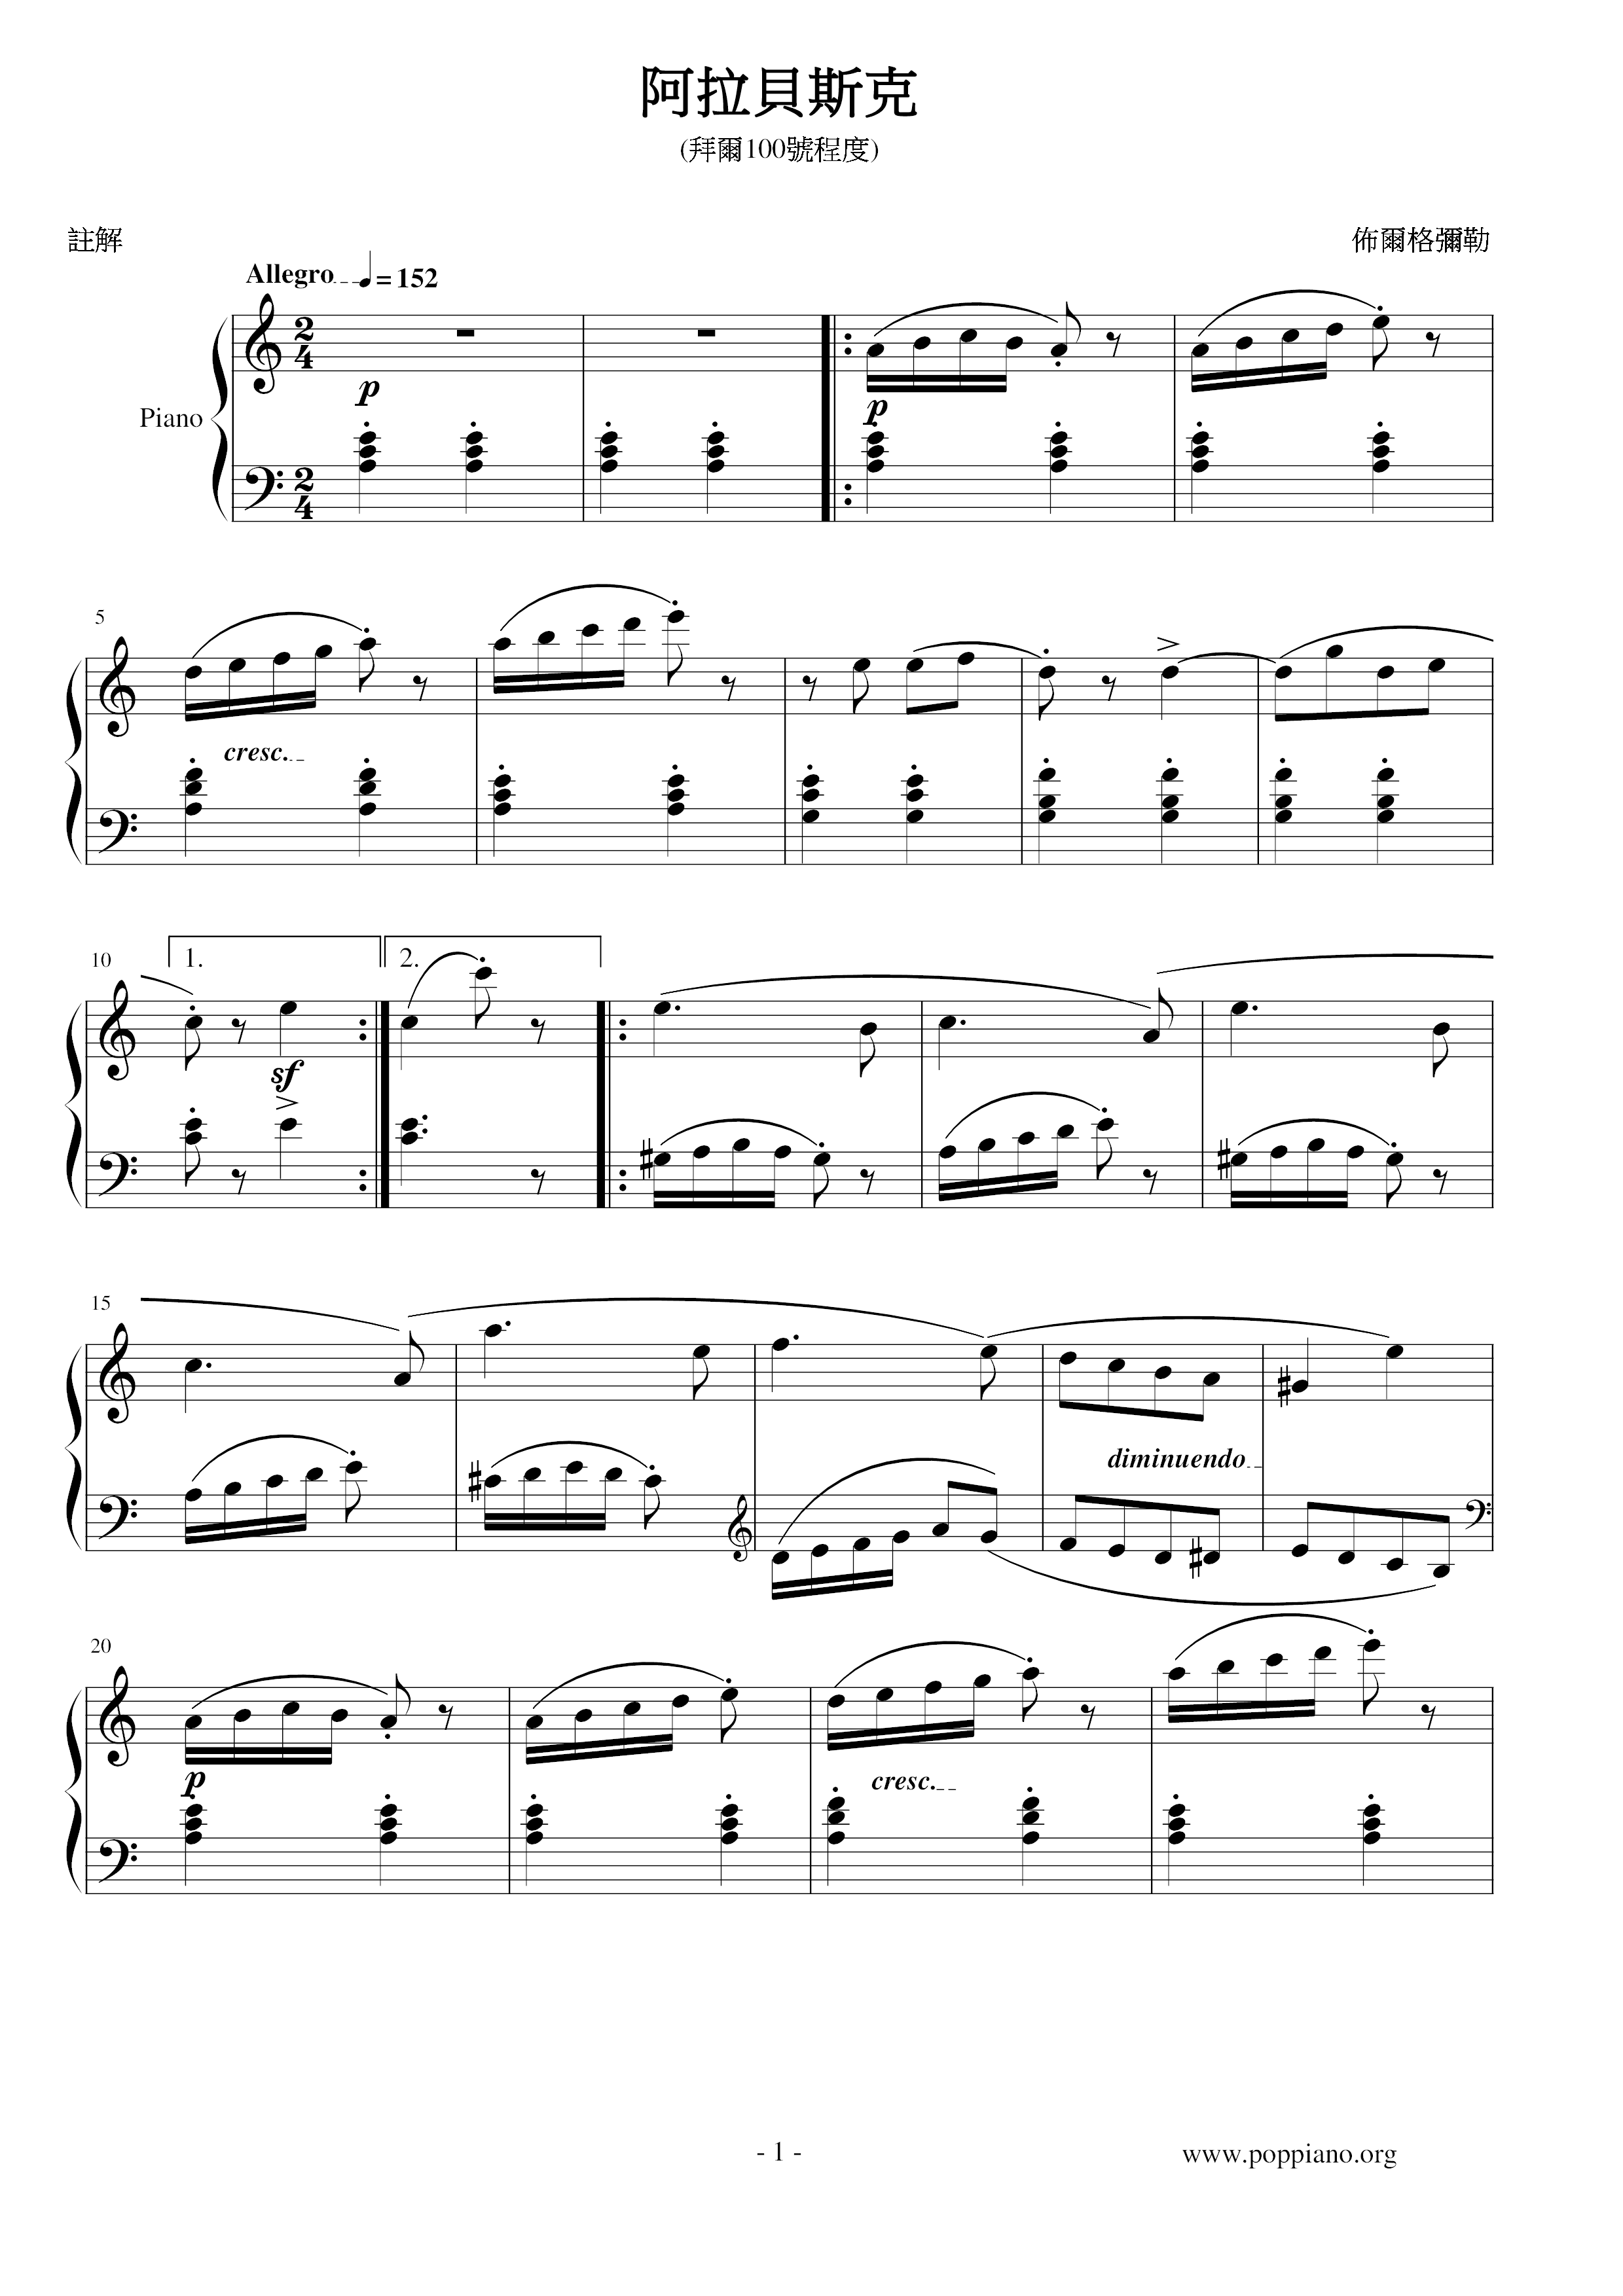 Arabesque 阿拉贝斯克琴谱